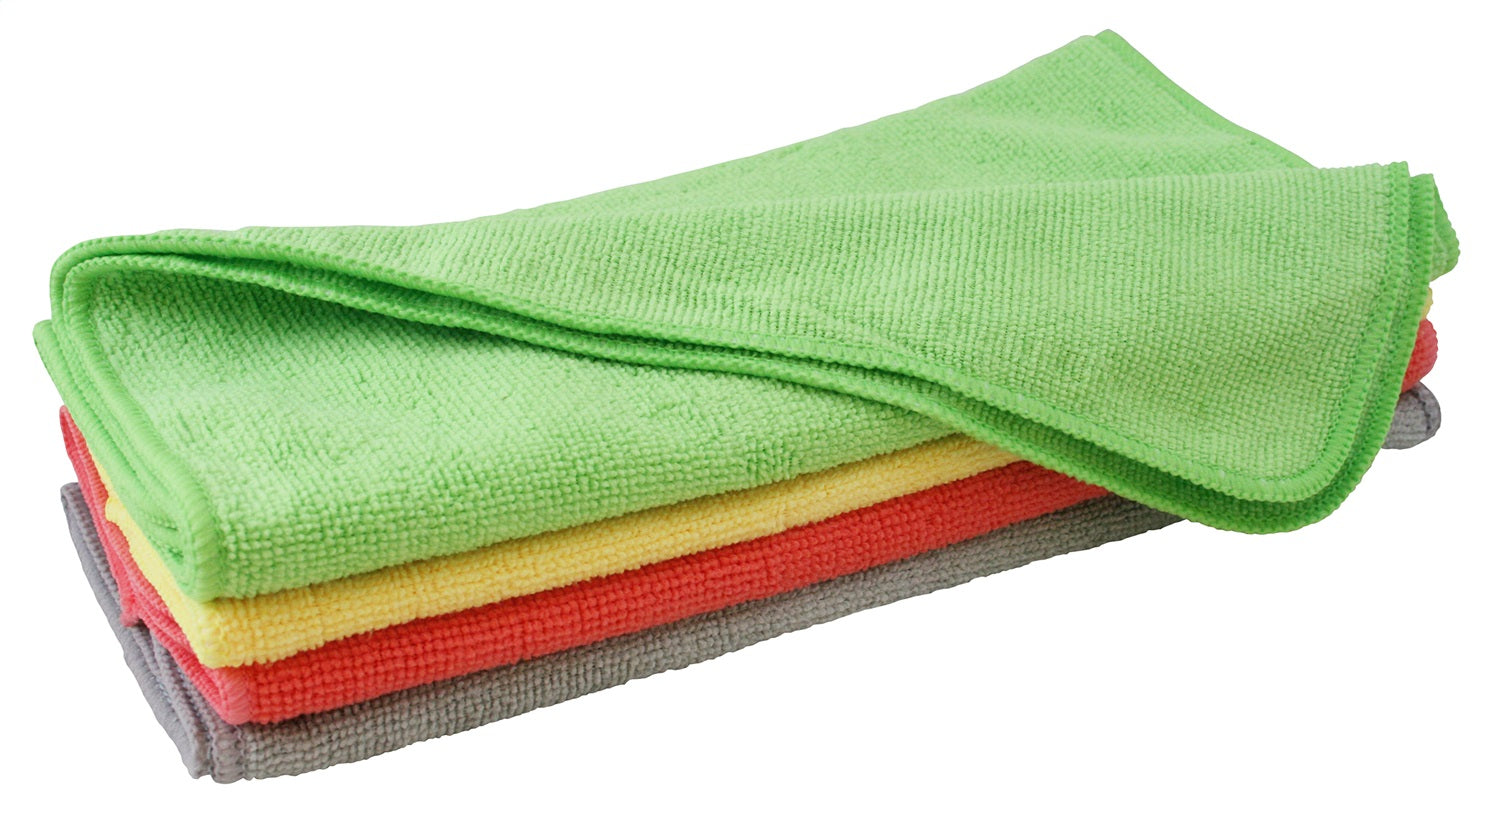 Carrand 45067 Microfiber Towels